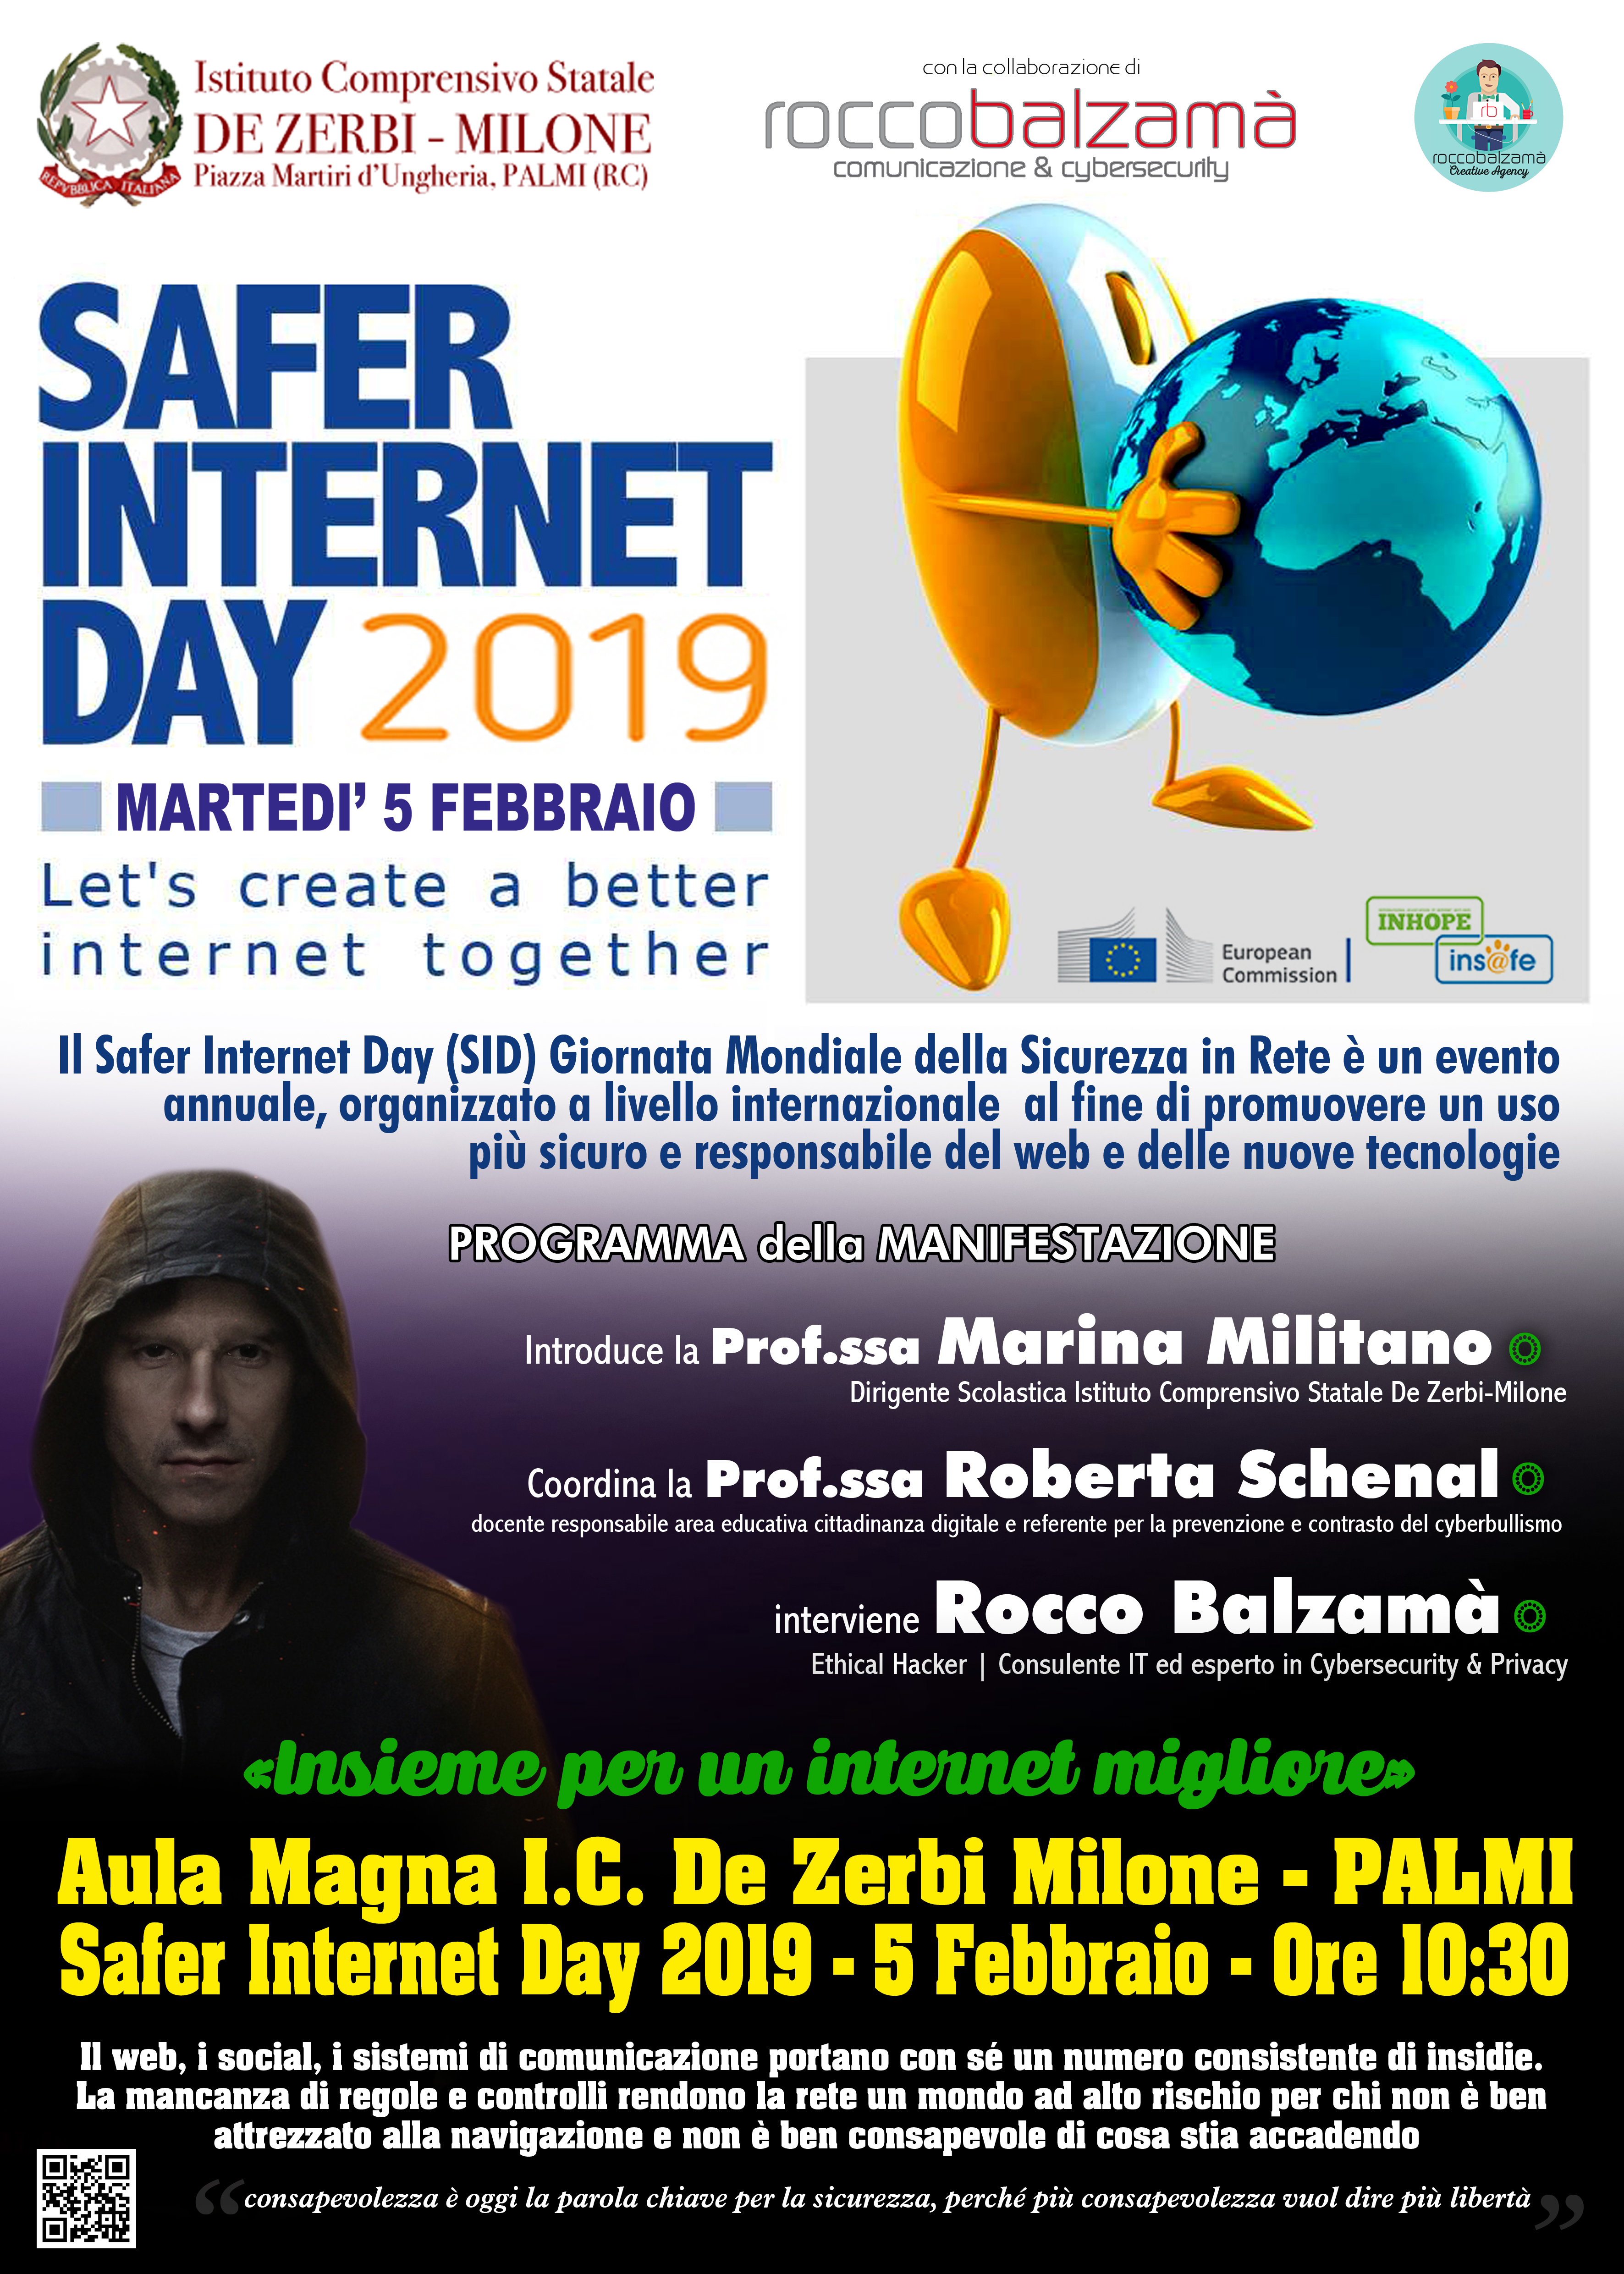 Safer Internet Day, SID,